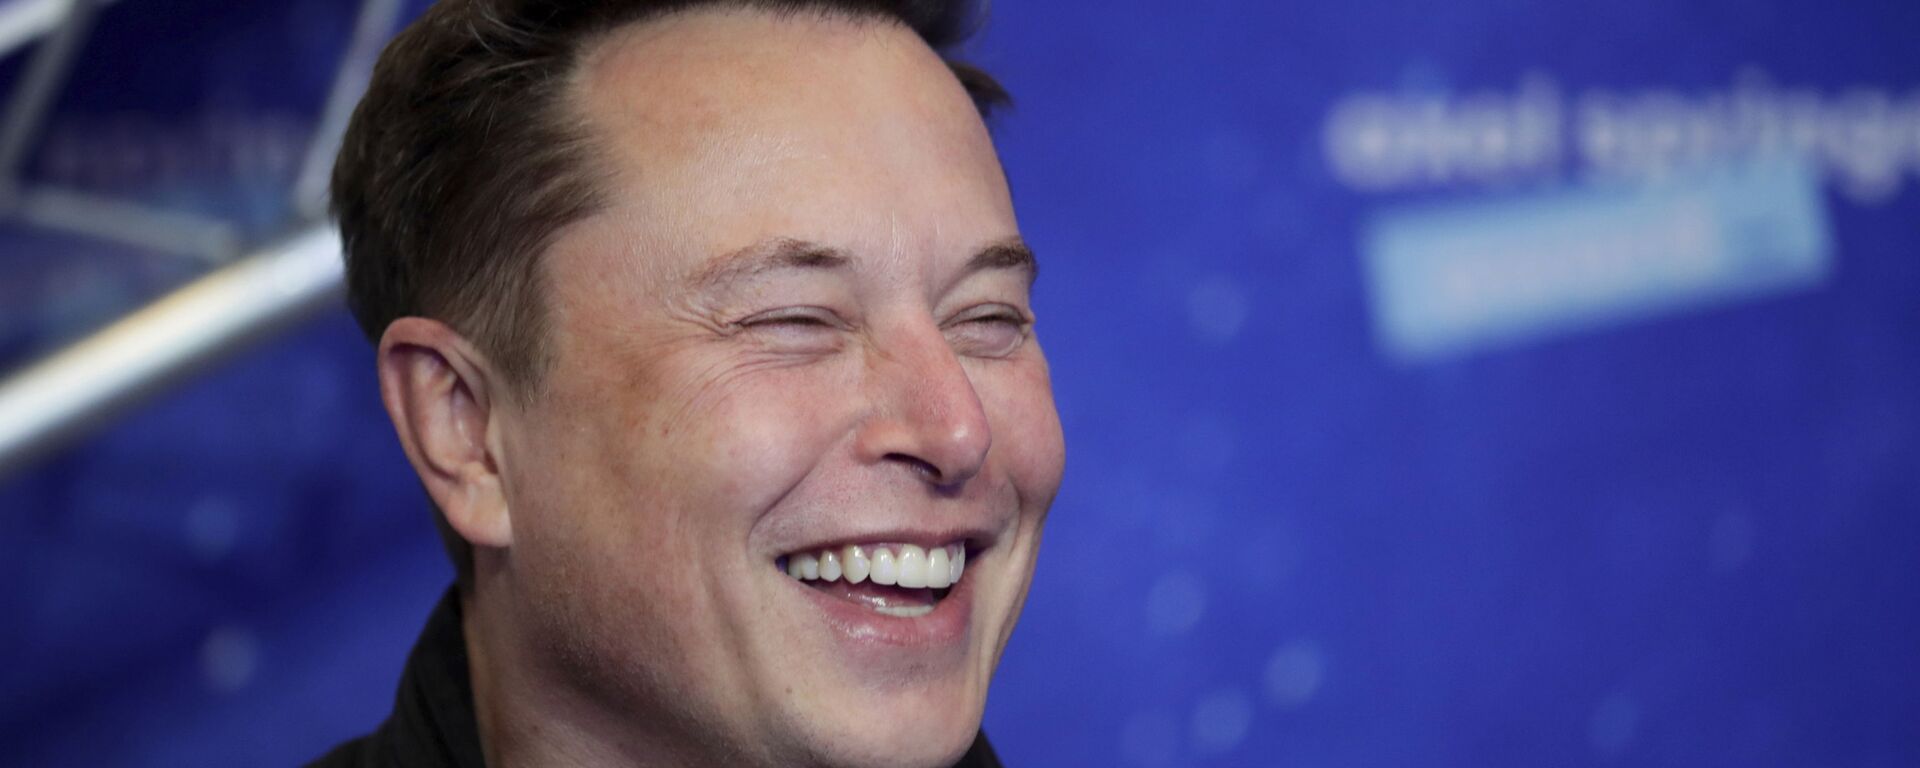 Elon Musk, fundador de Tesla y SpaceX - Sputnik Mundo, 1920, 20.09.2021